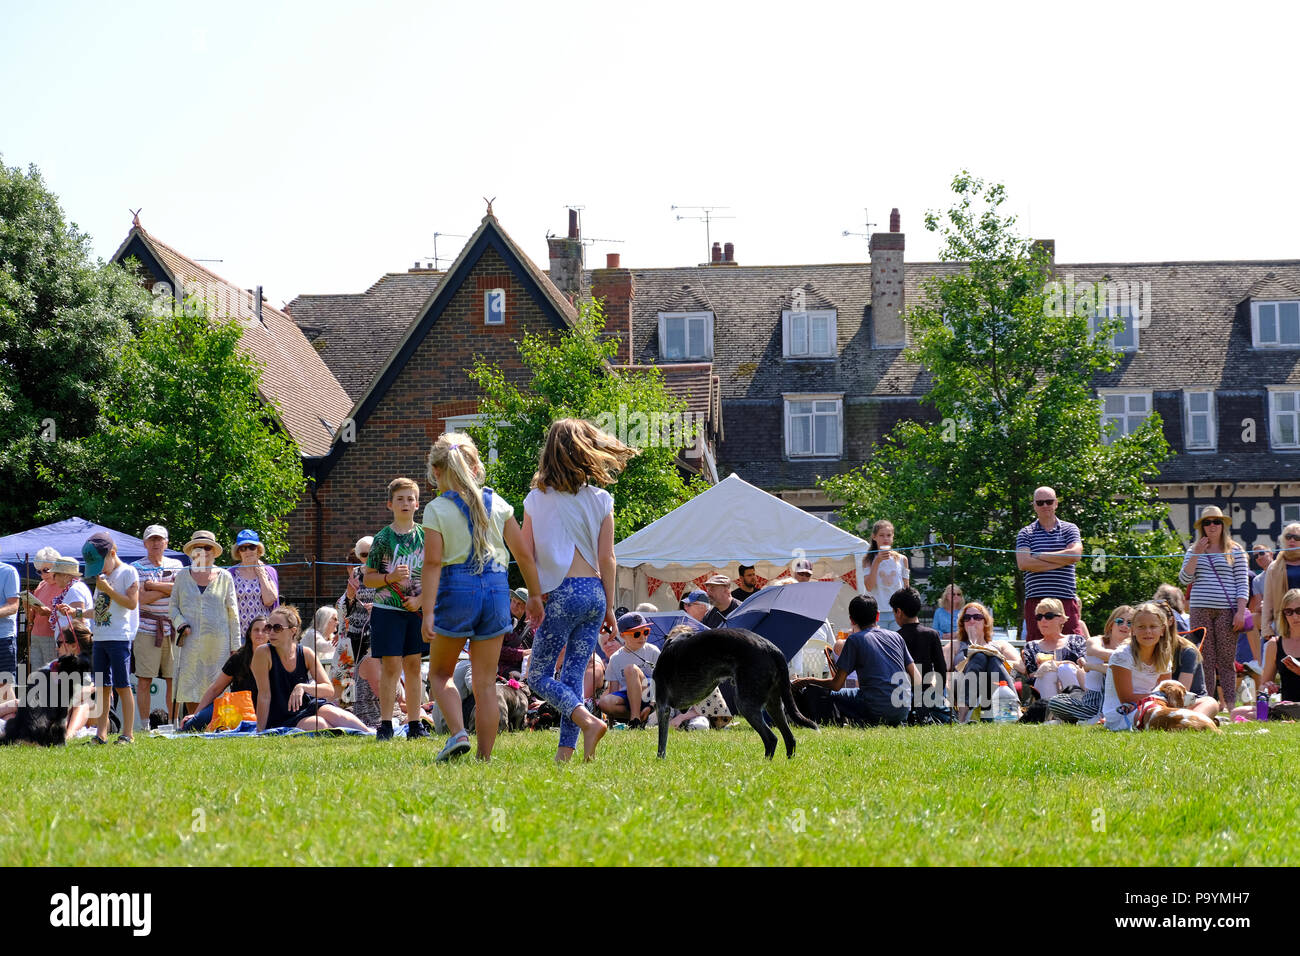 East Preston, West Sussex, UK. Fun dog show tenu le village vert. Les jeunes filles montrant leur animal de chien sur une jambe. Banque D'Images